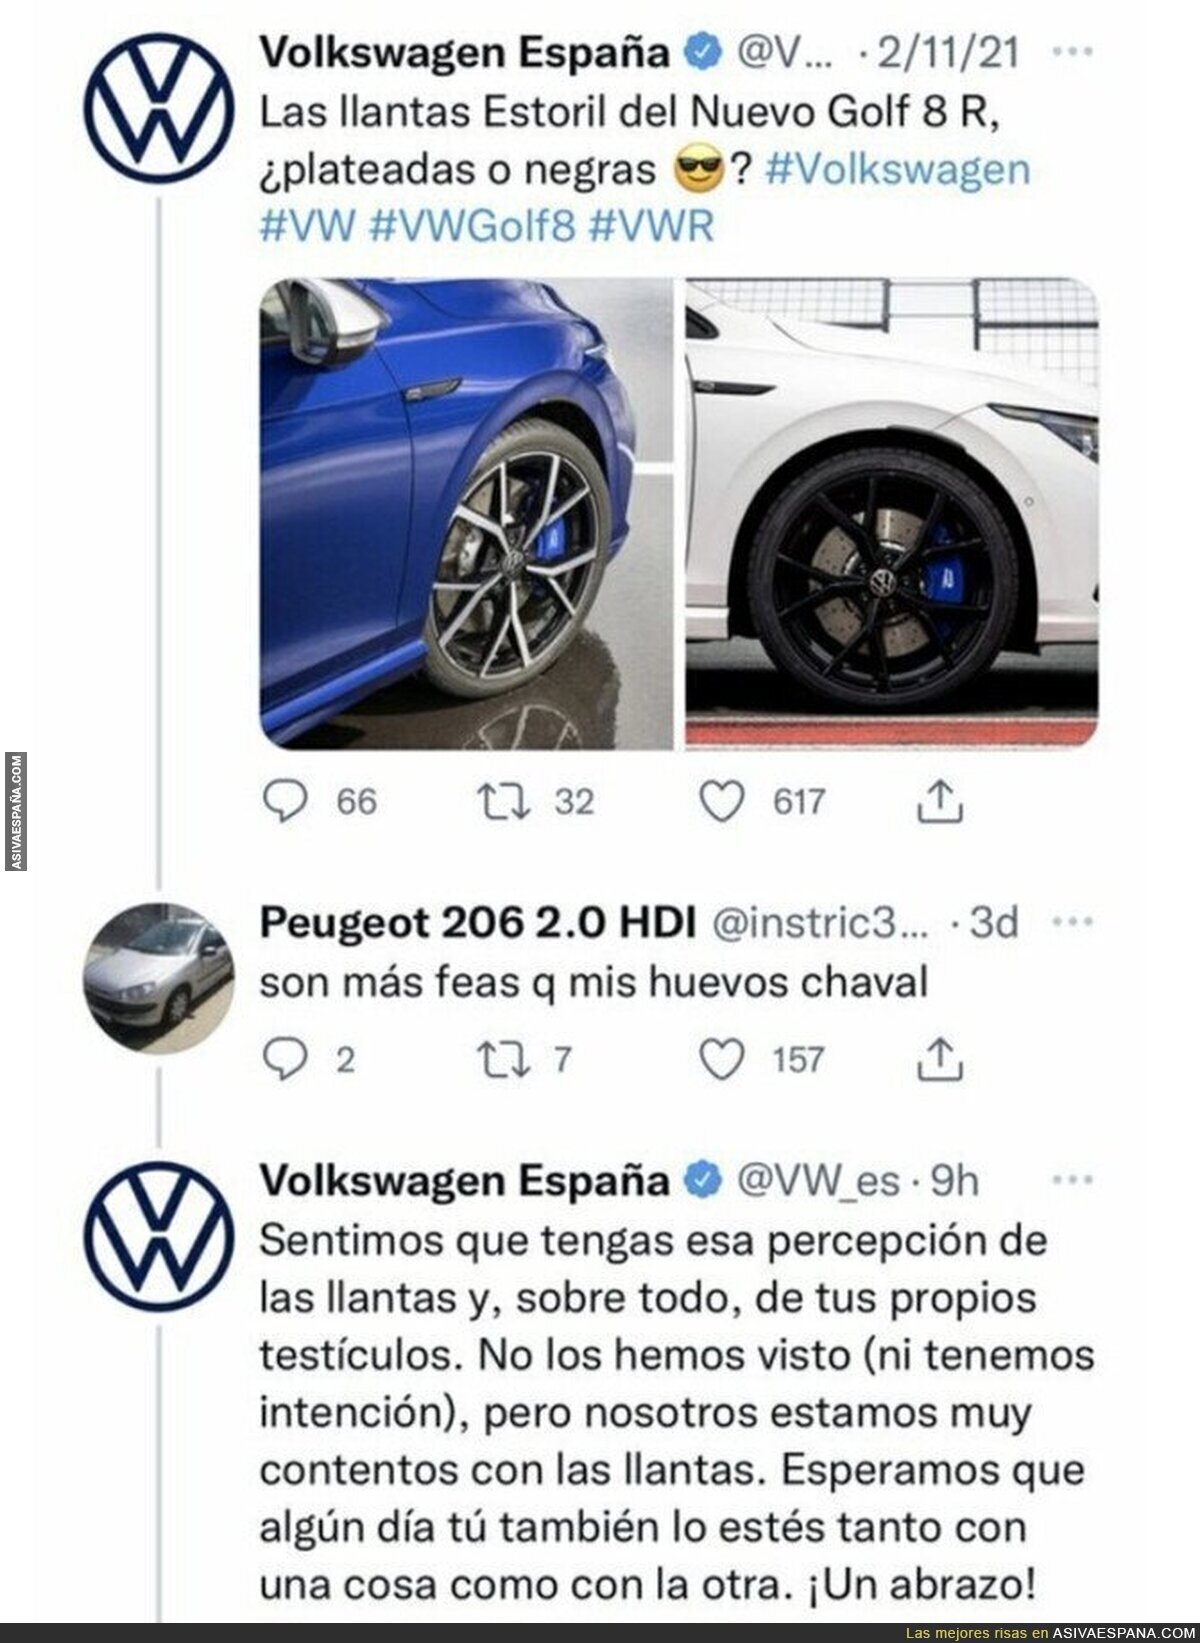 La monumental respuesta de Volkswagen a este usuario tras meterse con las llantas de su coche mencionándole sus huevos